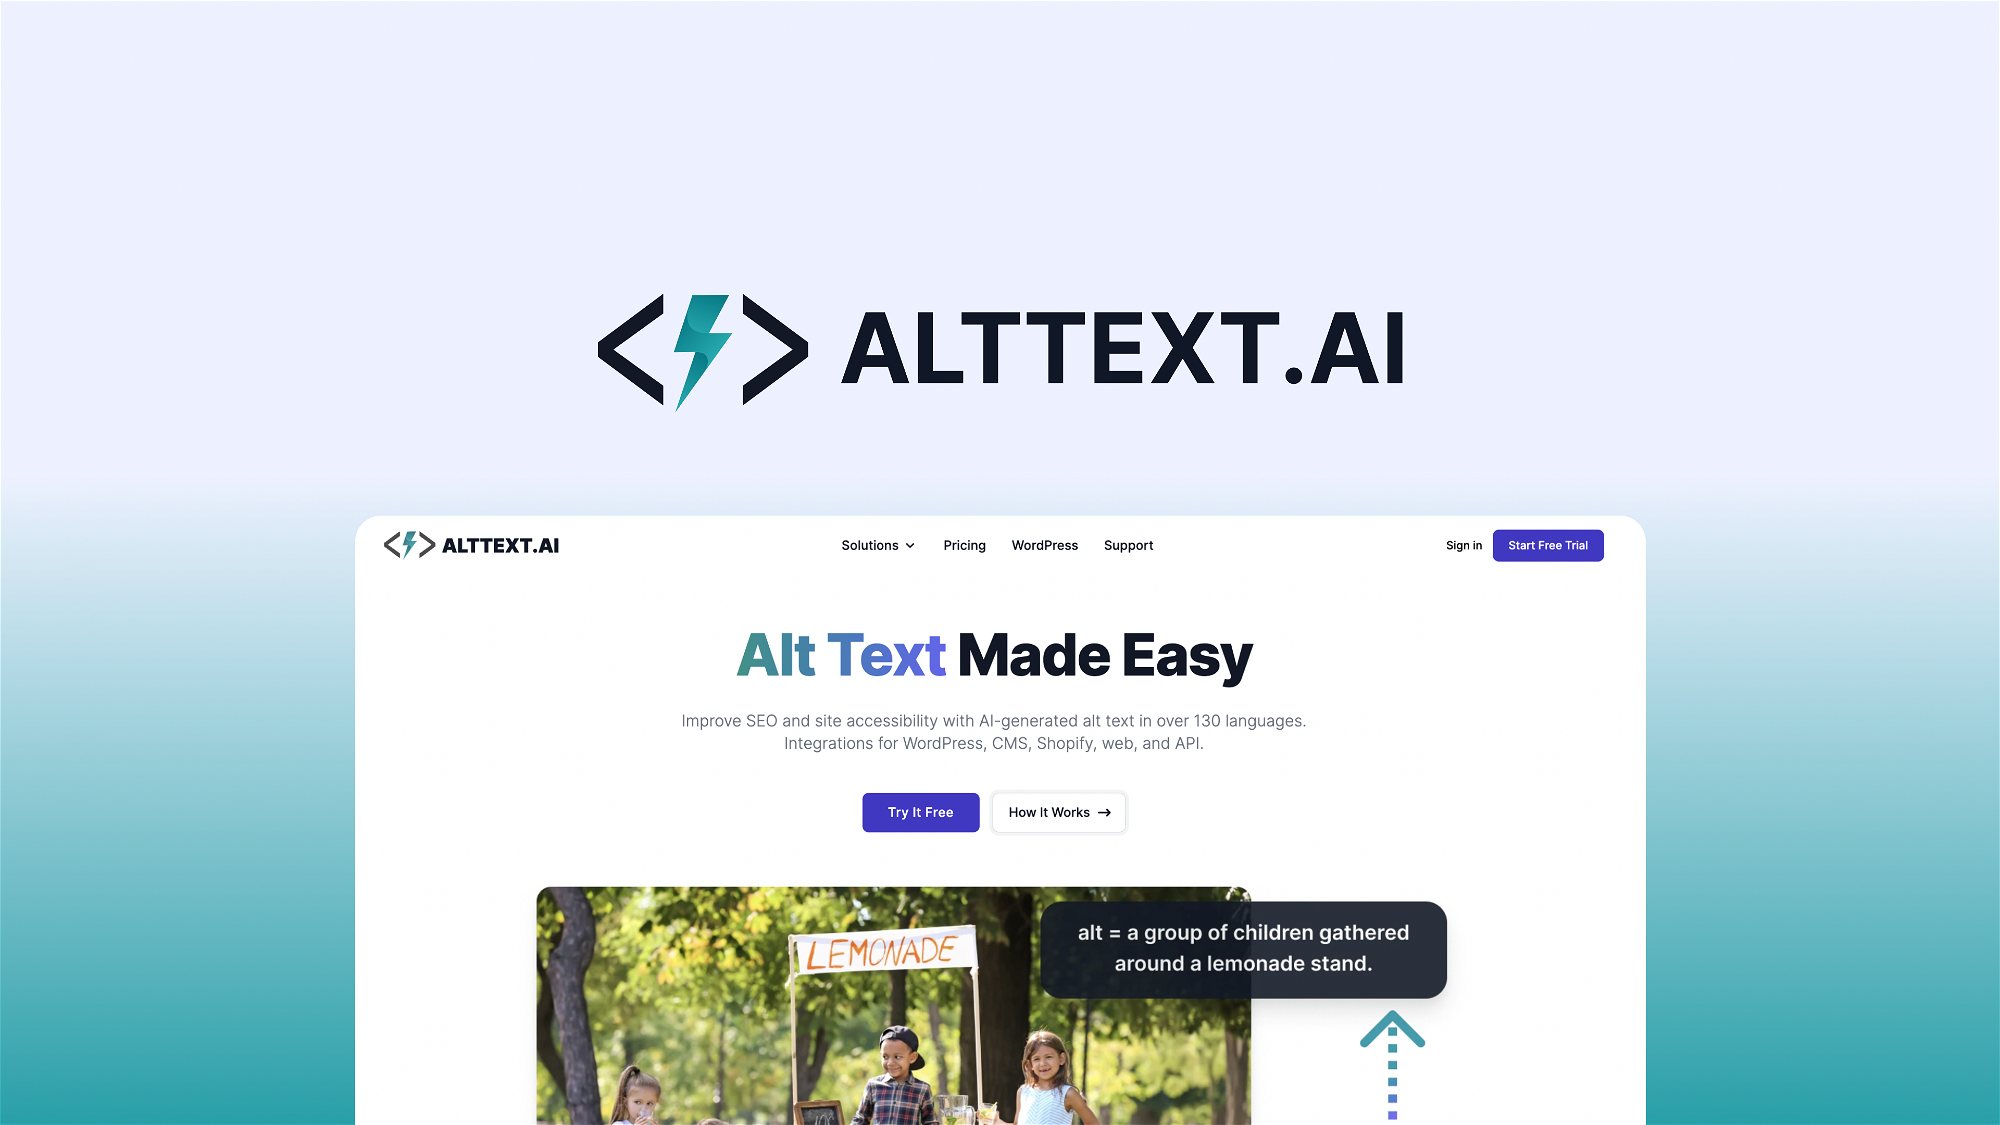 AltText.ai – LIFETIME Deals by appsumo